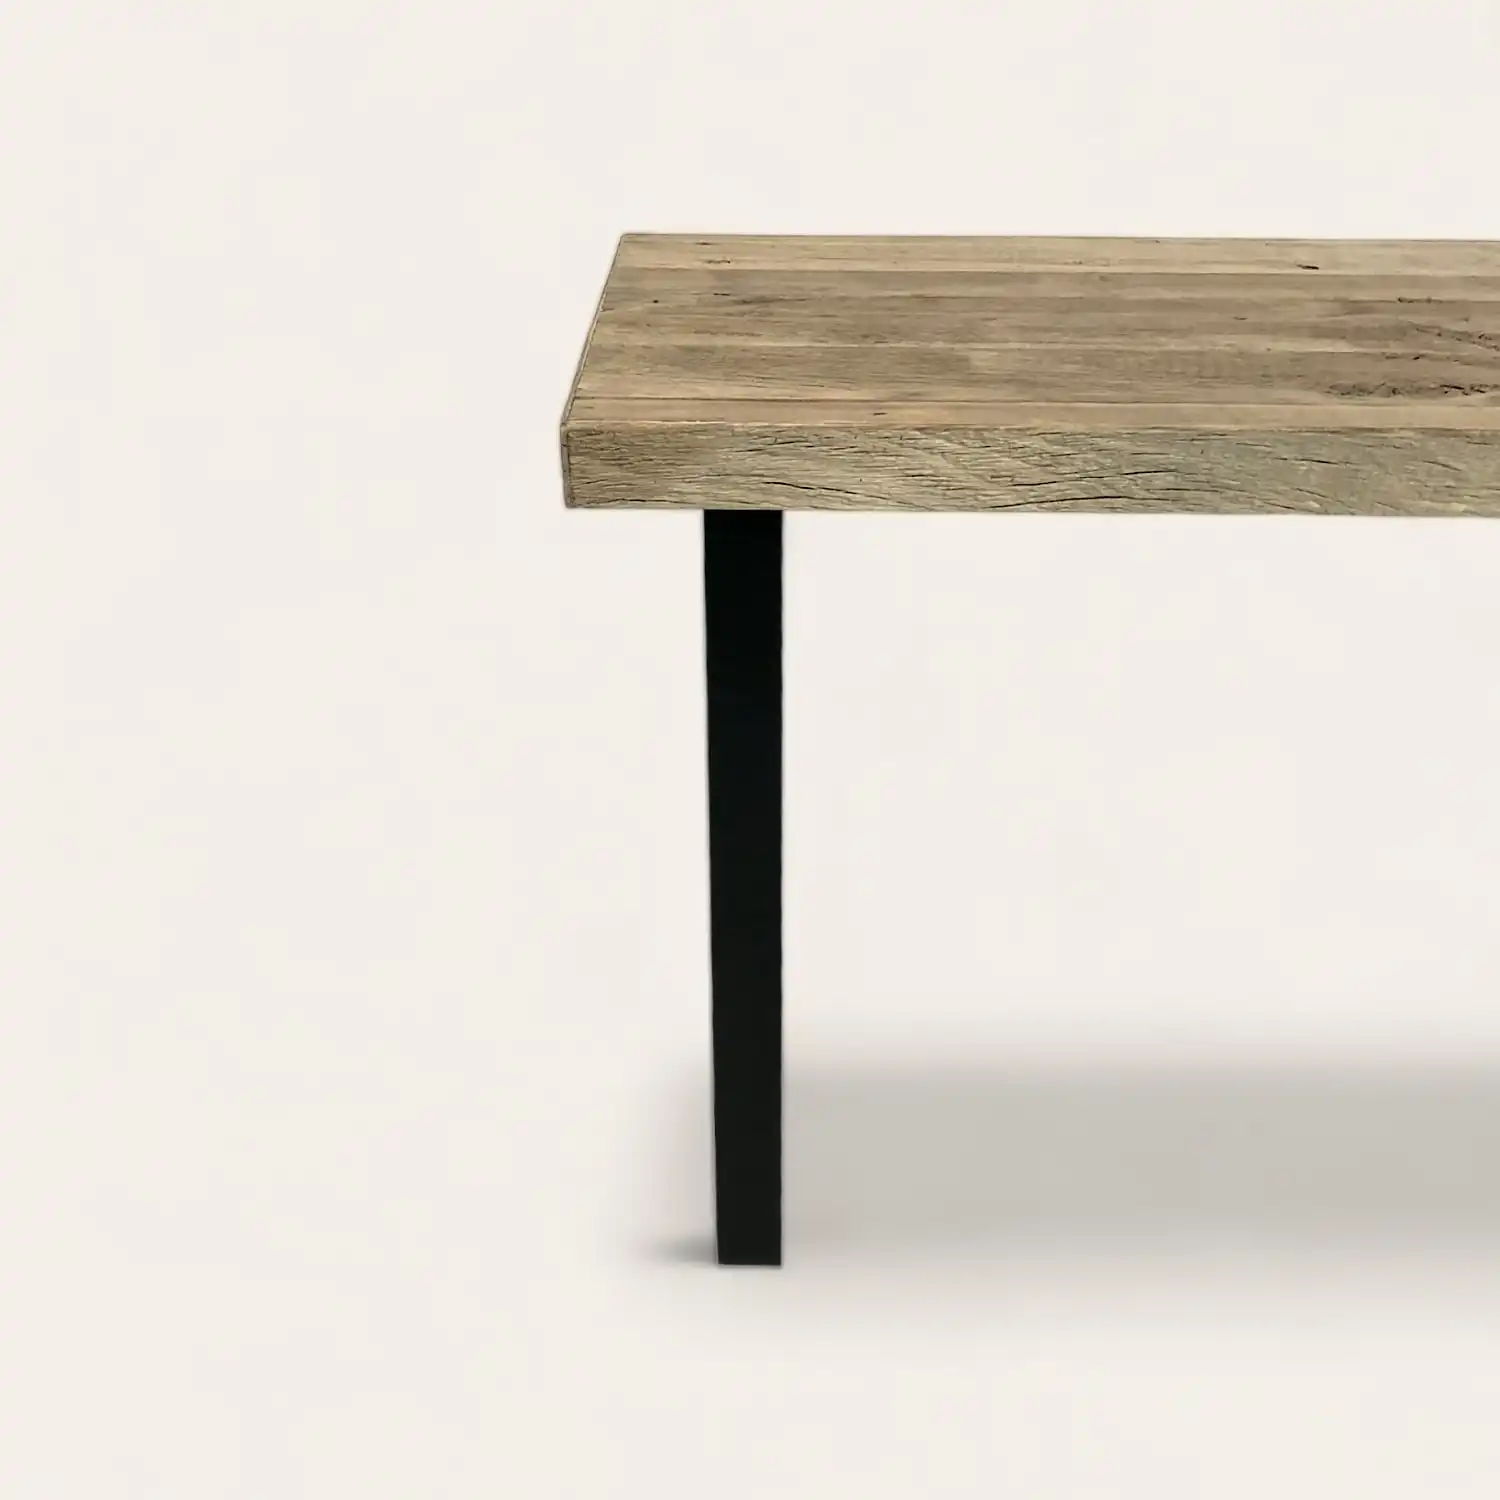  Une table en bois ancien avec des jambes noires sur un fond blanc. 